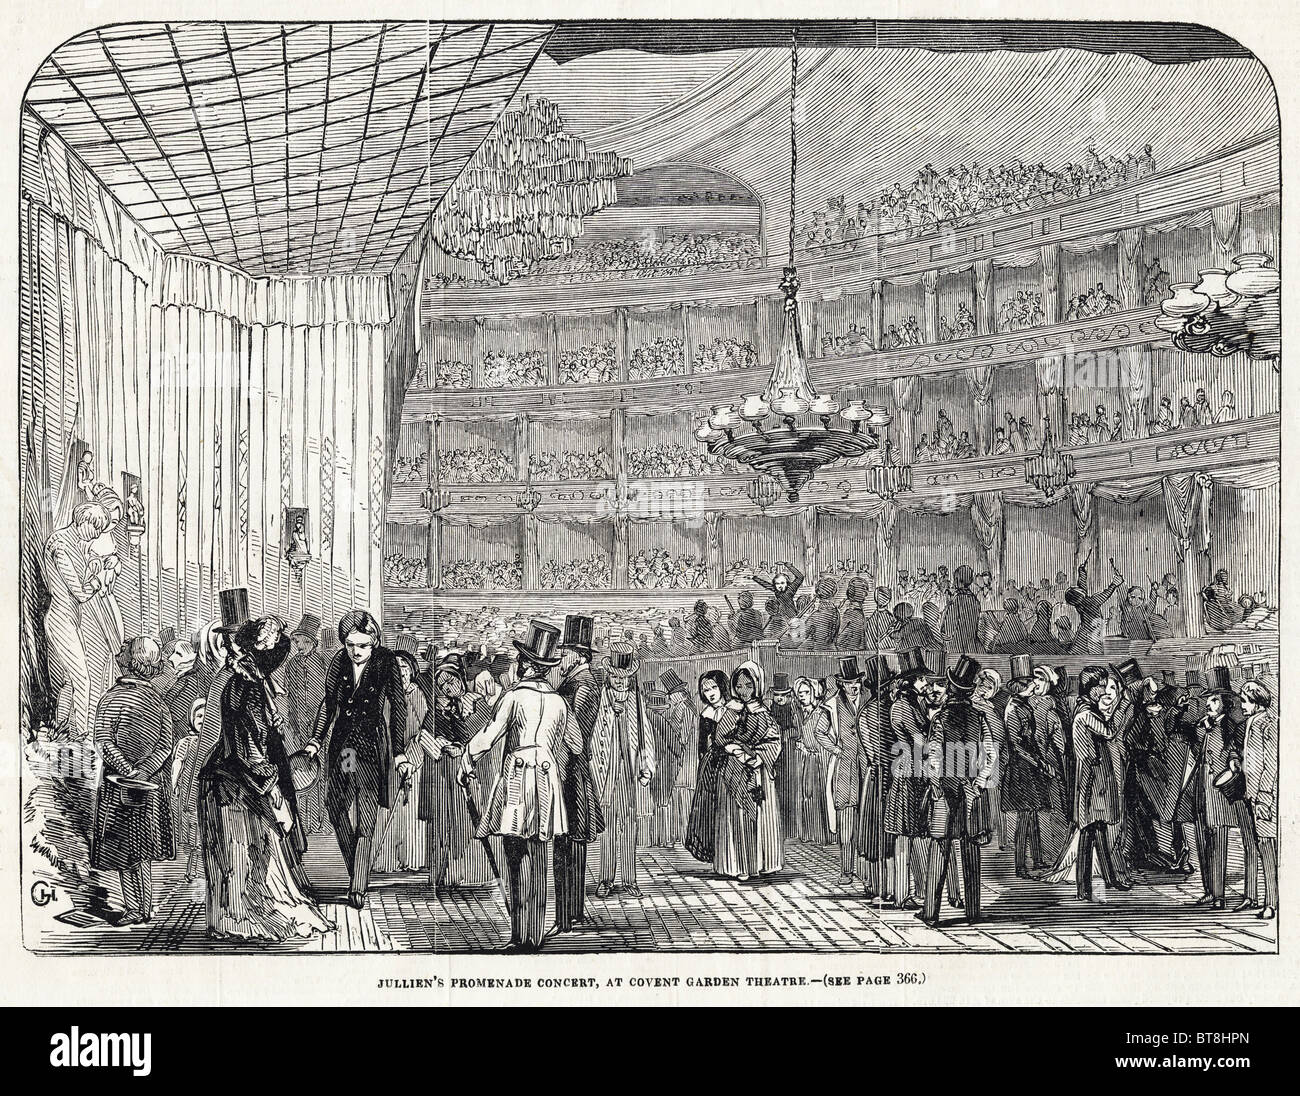 Chef d'orchestre compositeur Louis Antoine Jullien concert promenade, Covent Garden Theatre gravure datée du 6 décembre 1845 Banque D'Images